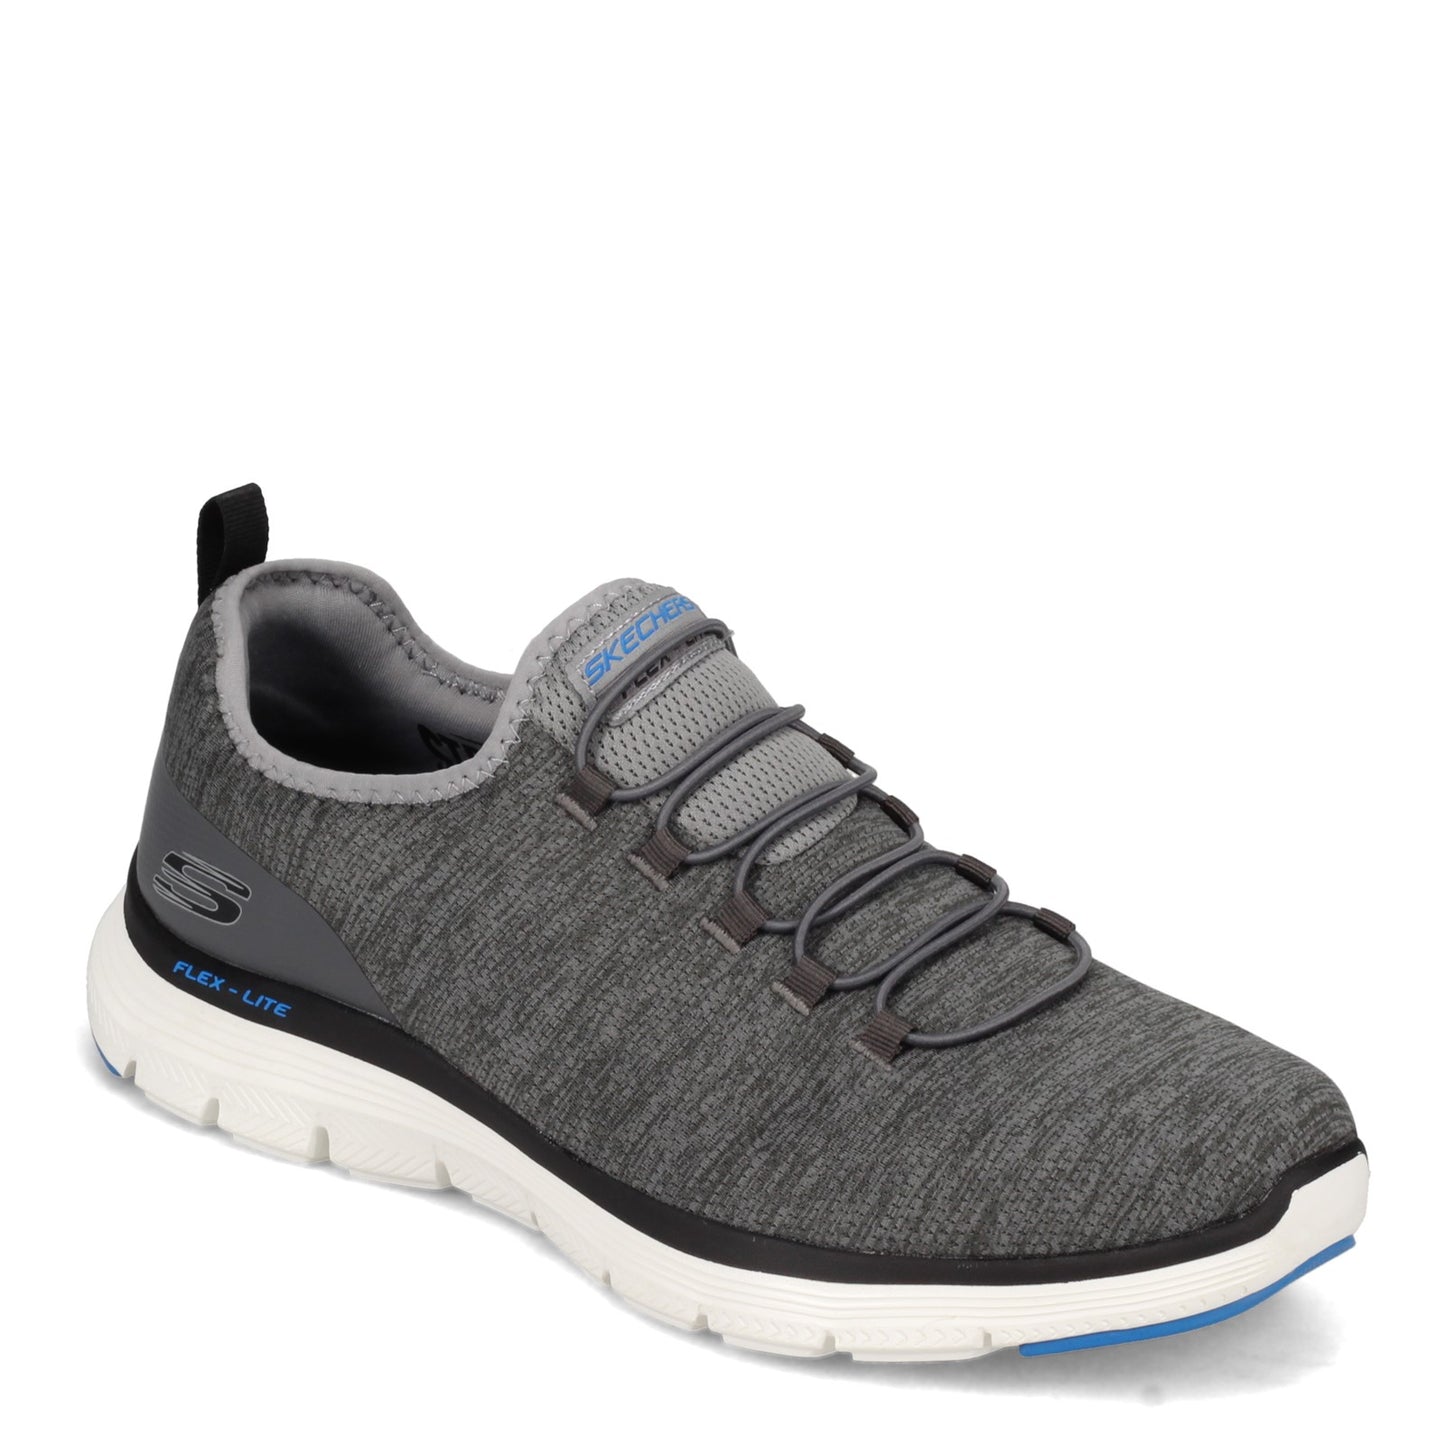 Peltz Shoes  Men's Skechers Flex Advantage 4.0 - Contributor Walking Shoe - Wide Width GREY BLACK 232226W-GYBK